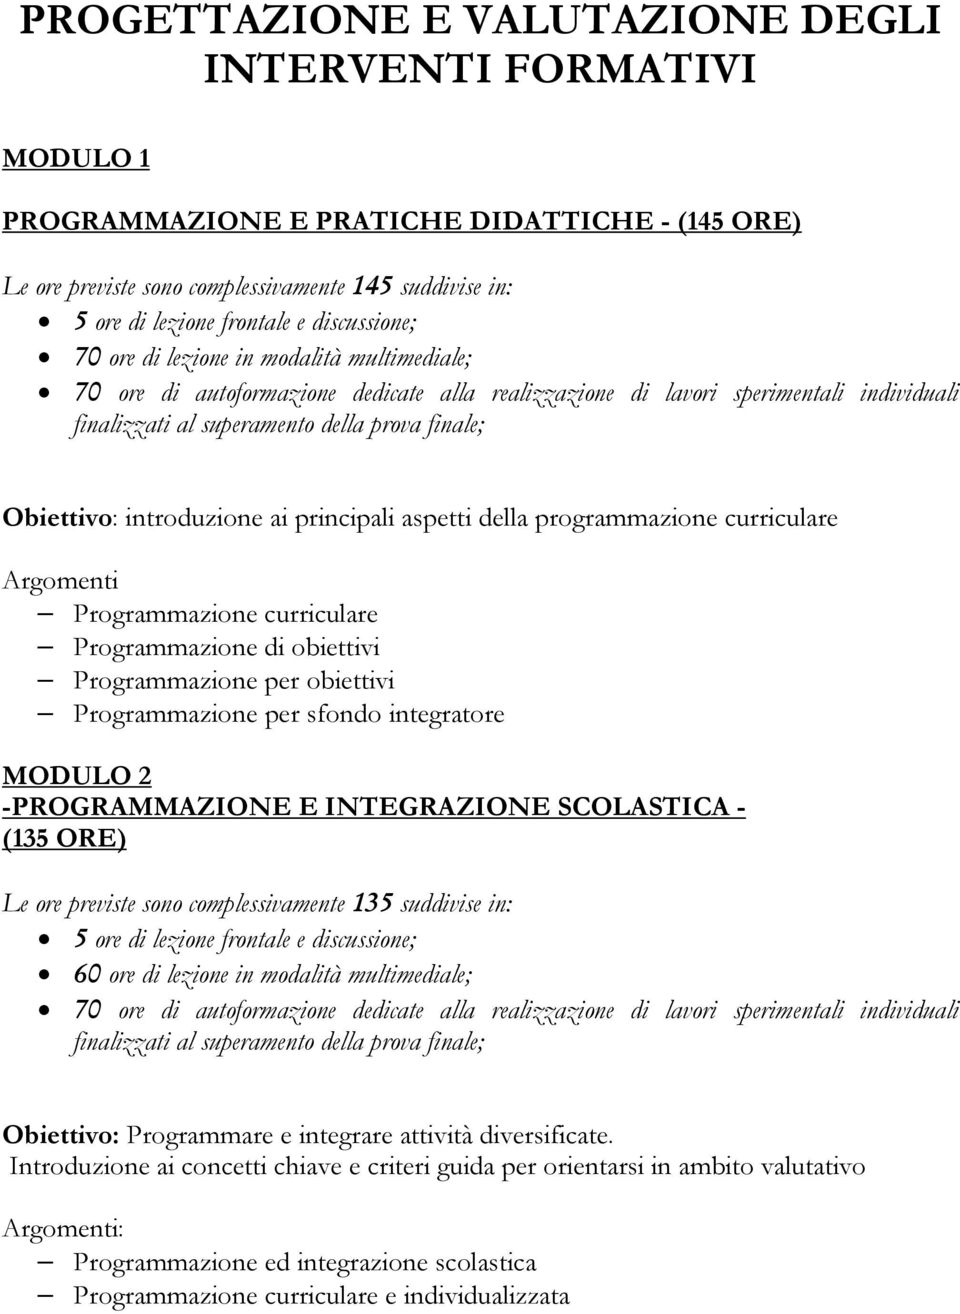 Programmazione curriculare Programmazione di obiettivi Programmazione per obiettivi Programmazione per sfondo integratore MODULO 2 -PROGRAMMAZIONE E INTEGRAZIONE SCOLASTICA - (135 ORE) Le ore